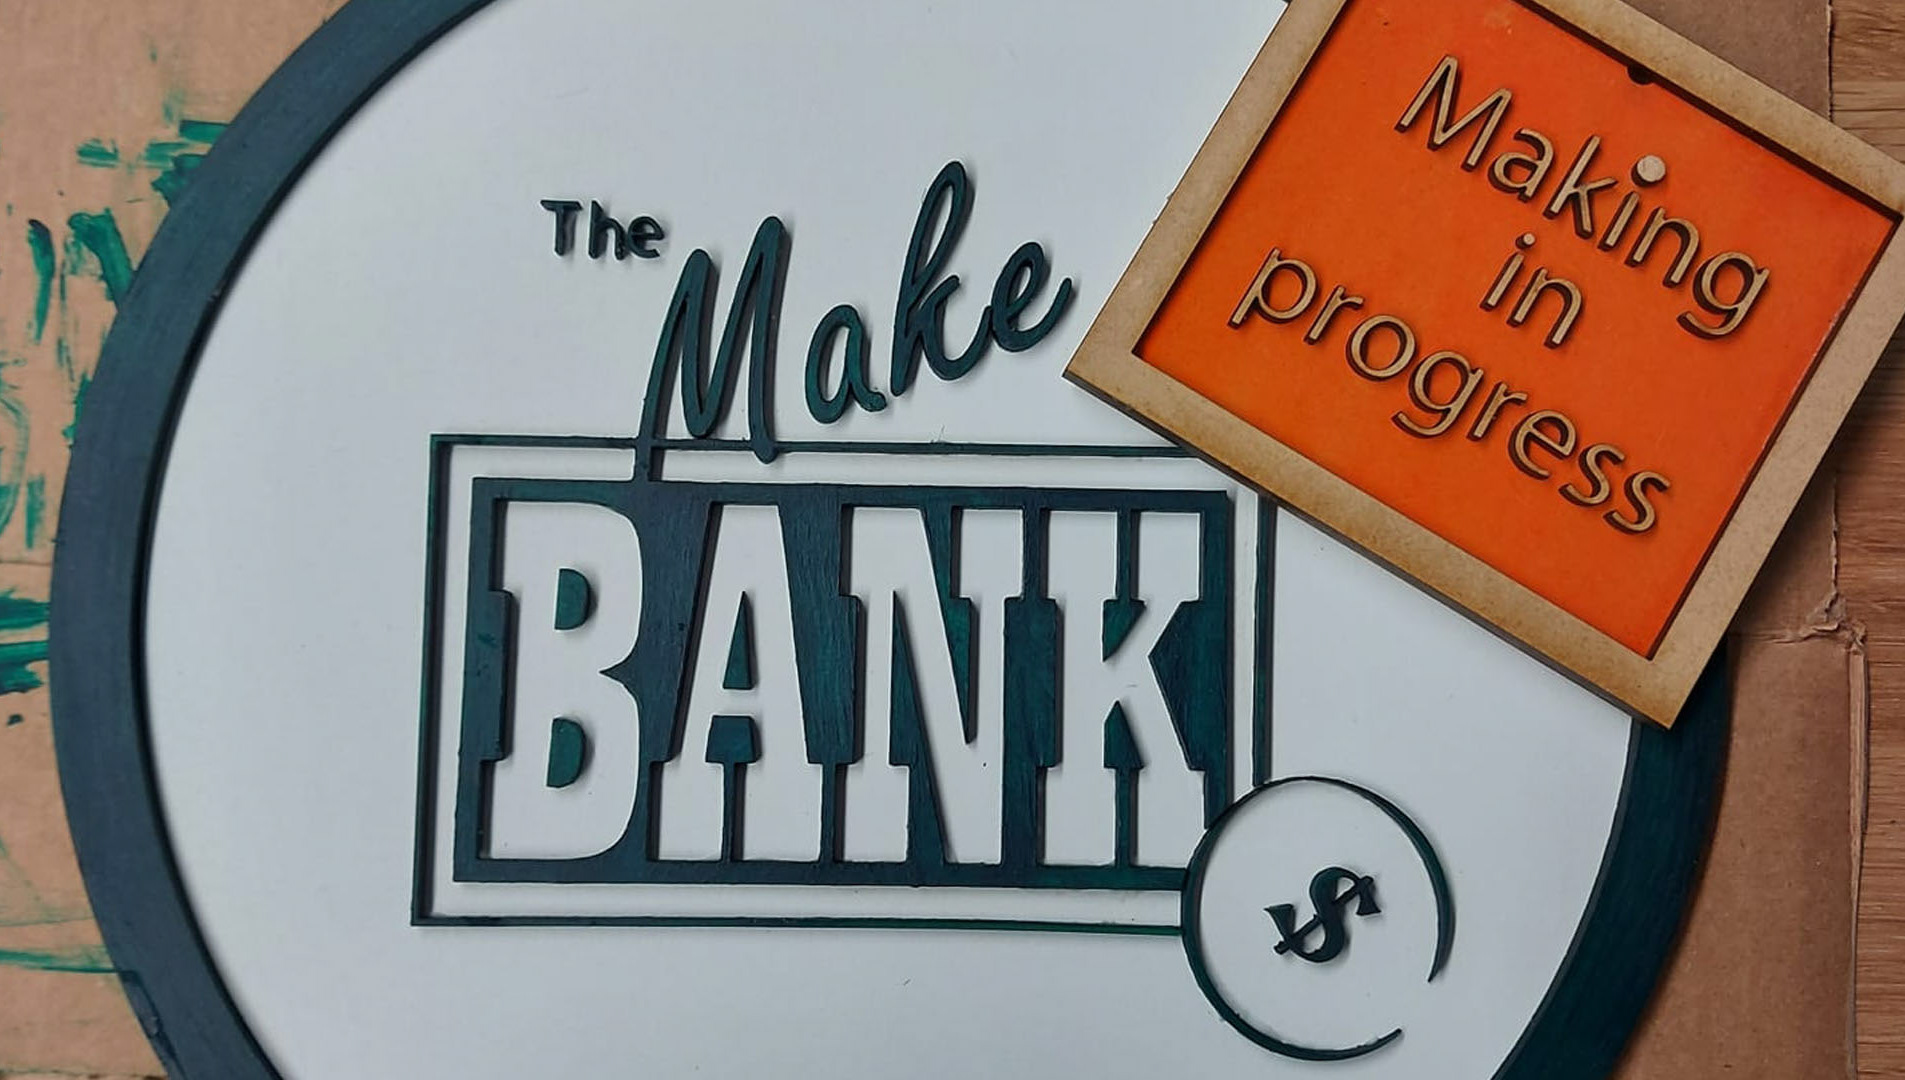 The Make Bank